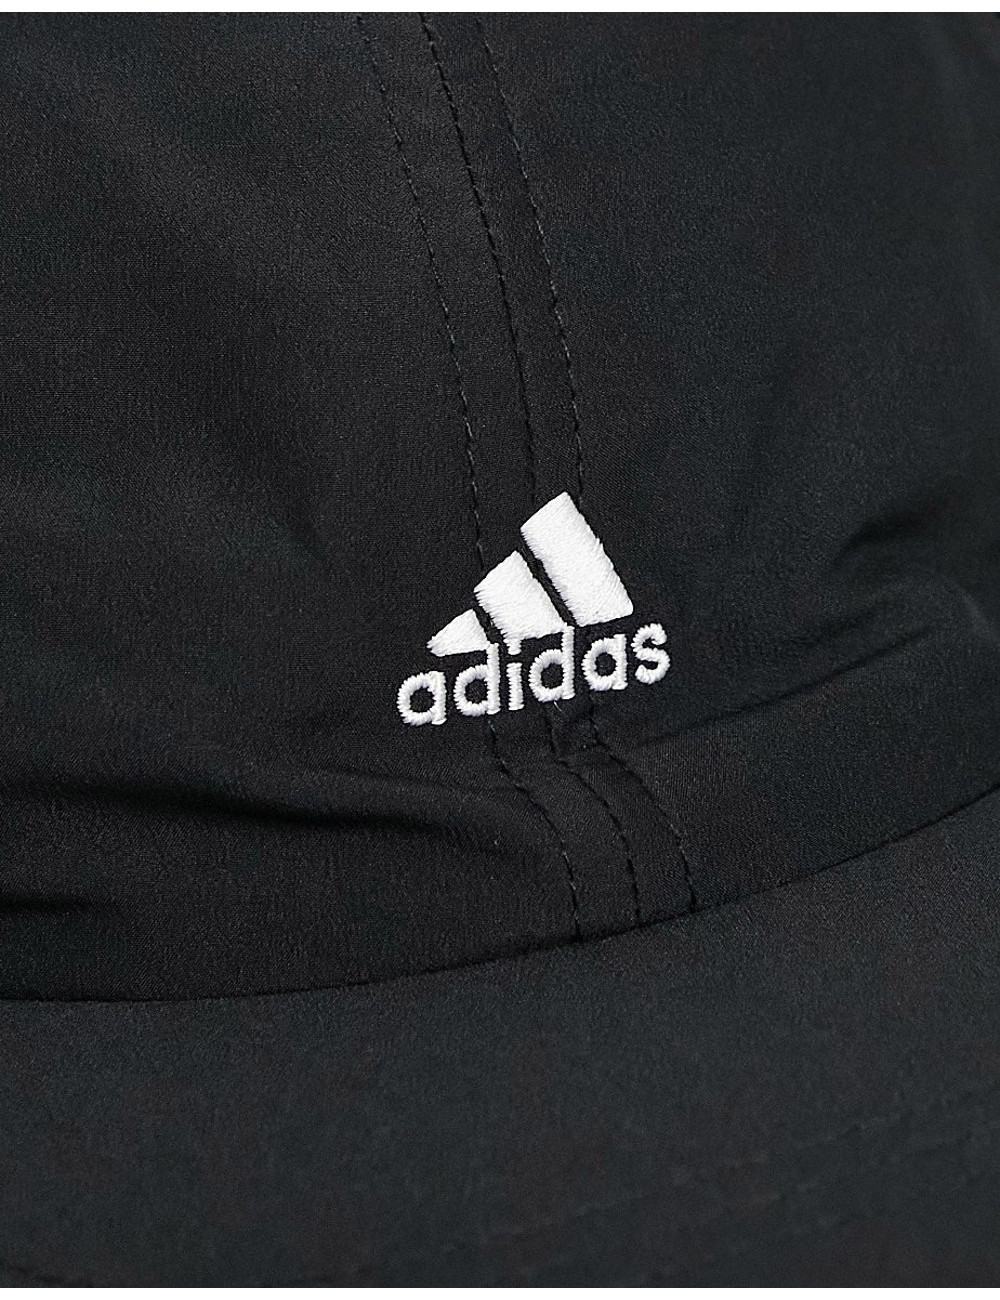 adidas Running cap in black